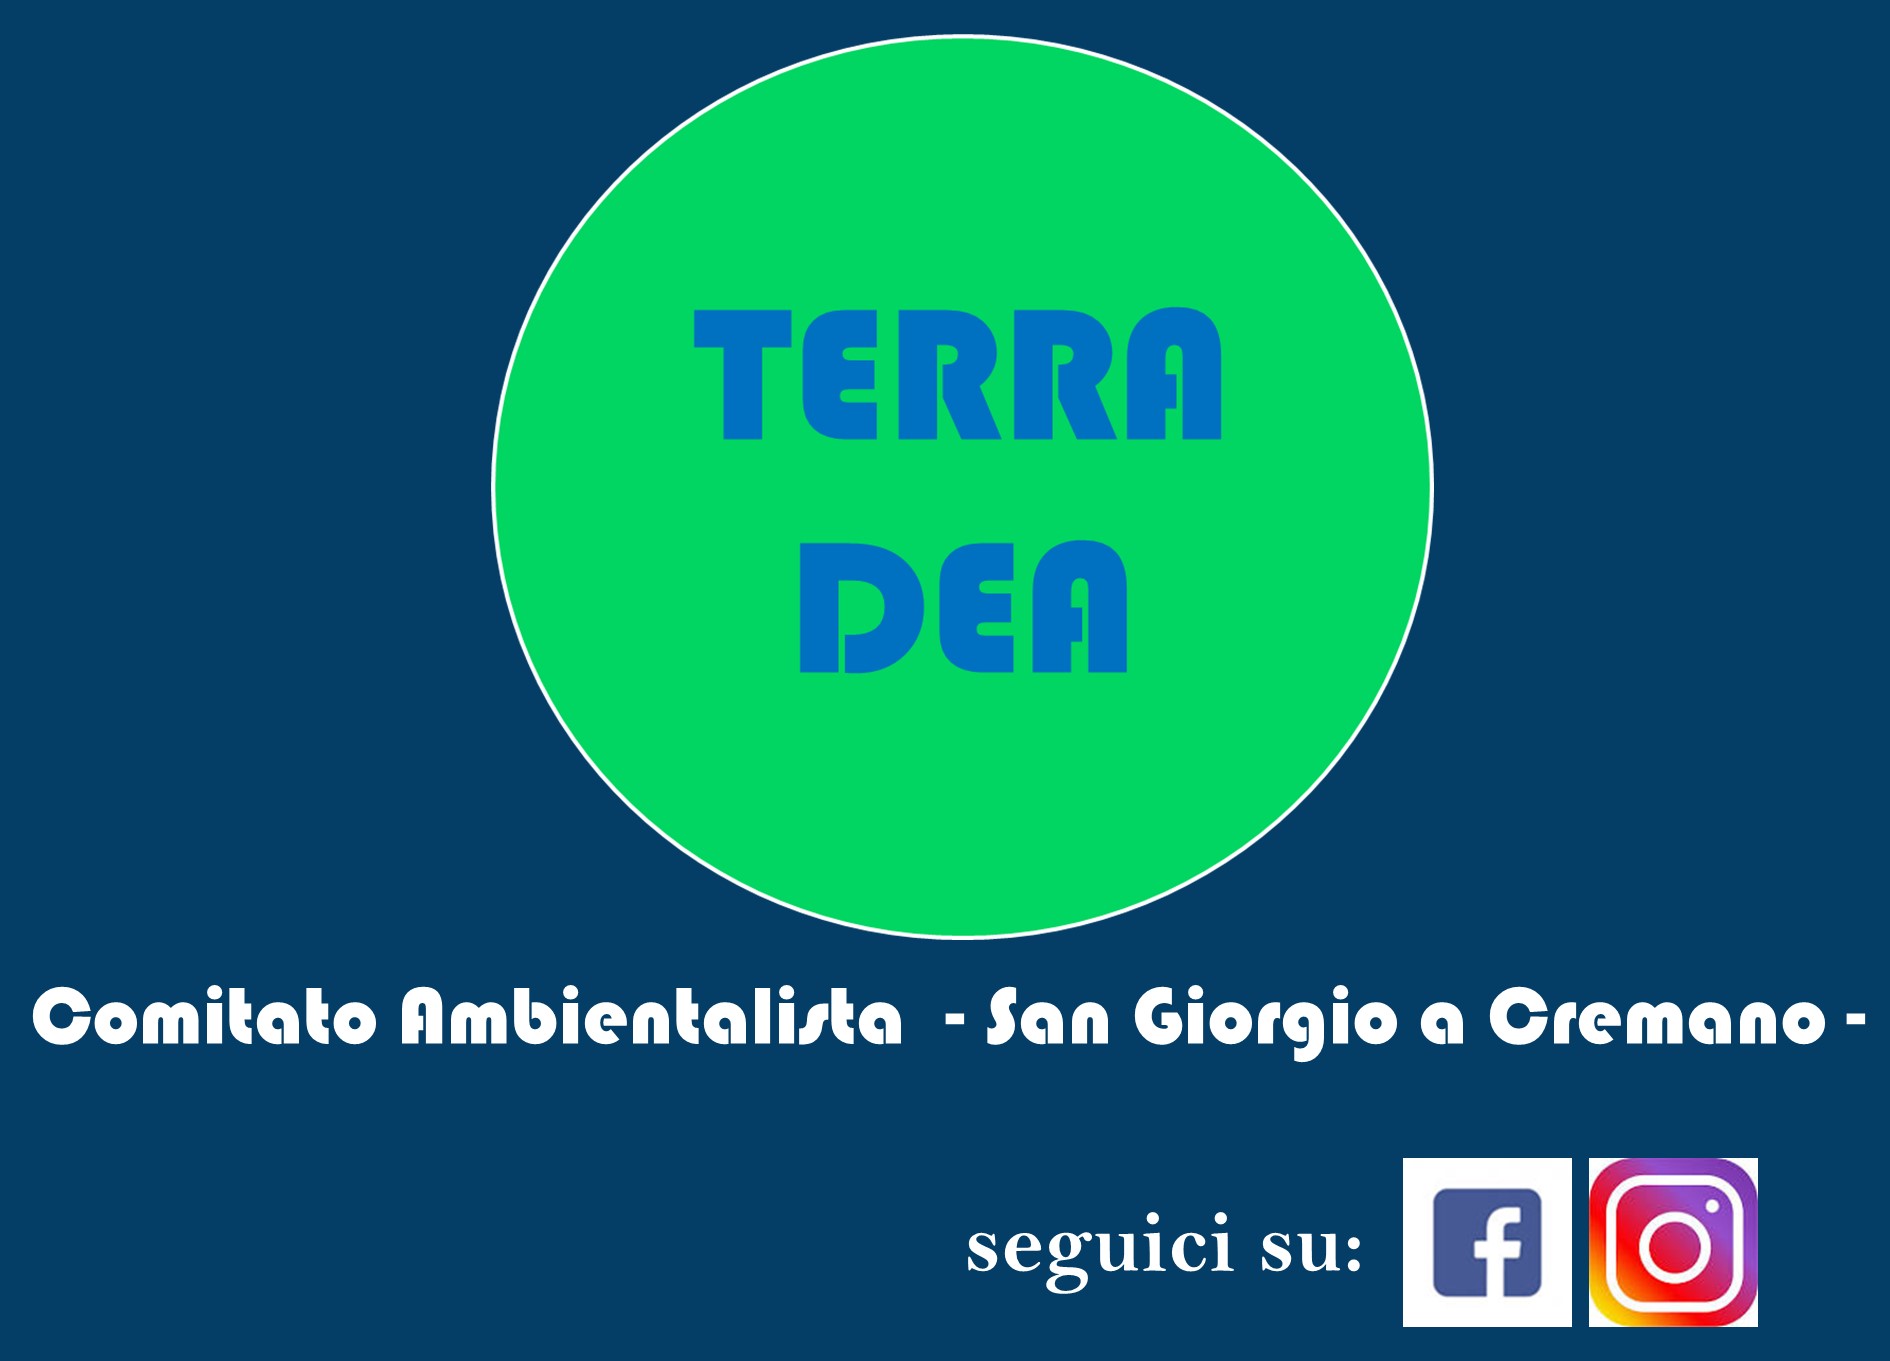 www.terradea.it